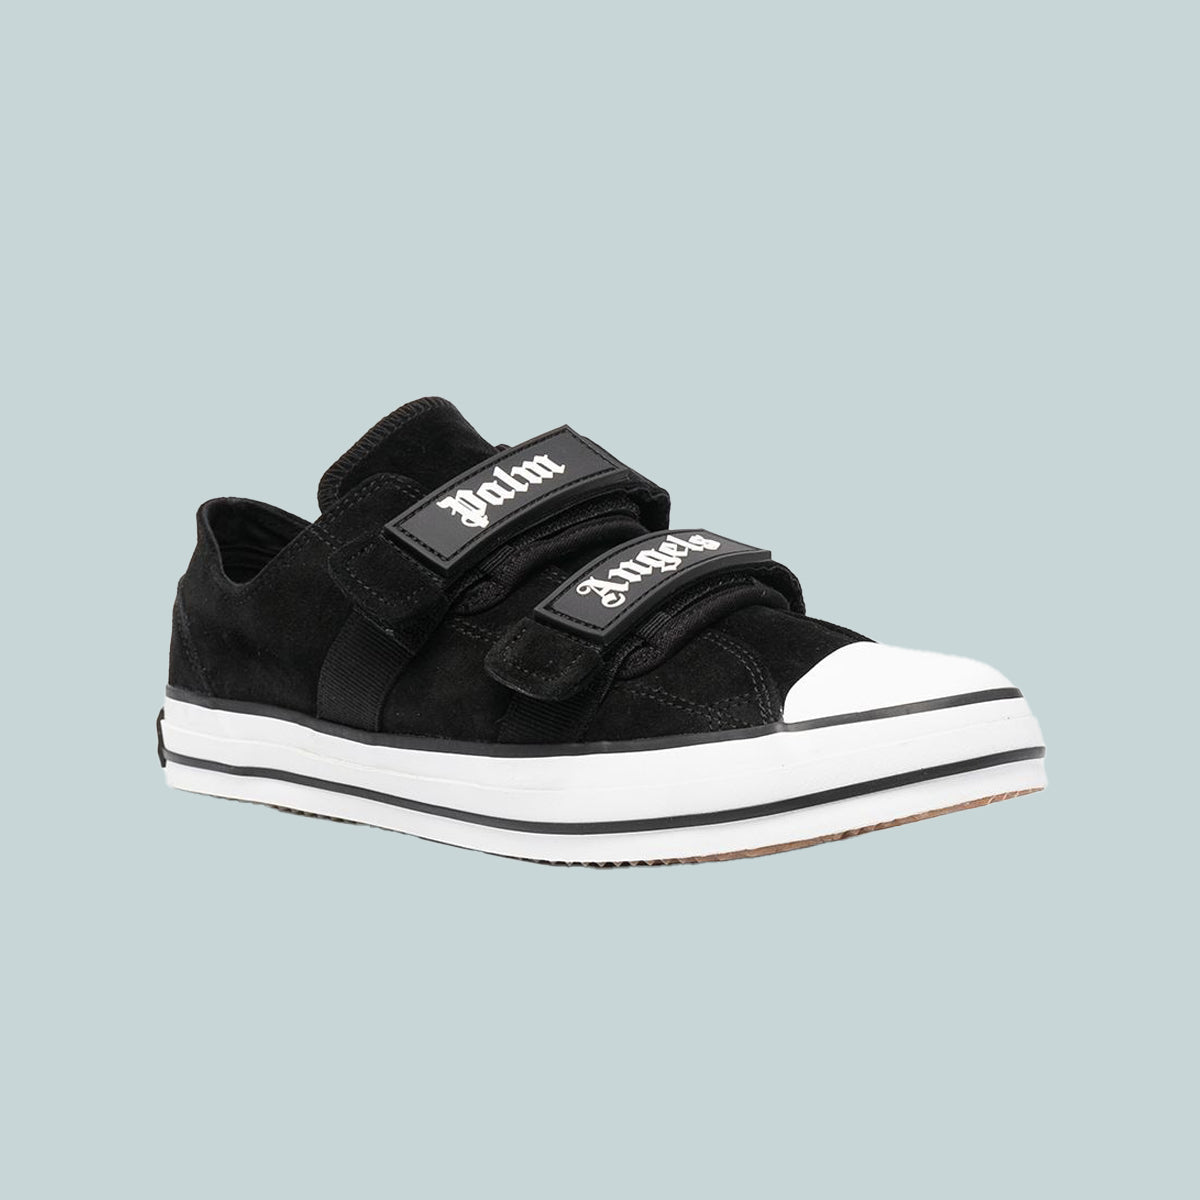 Black vulcanised sneakers